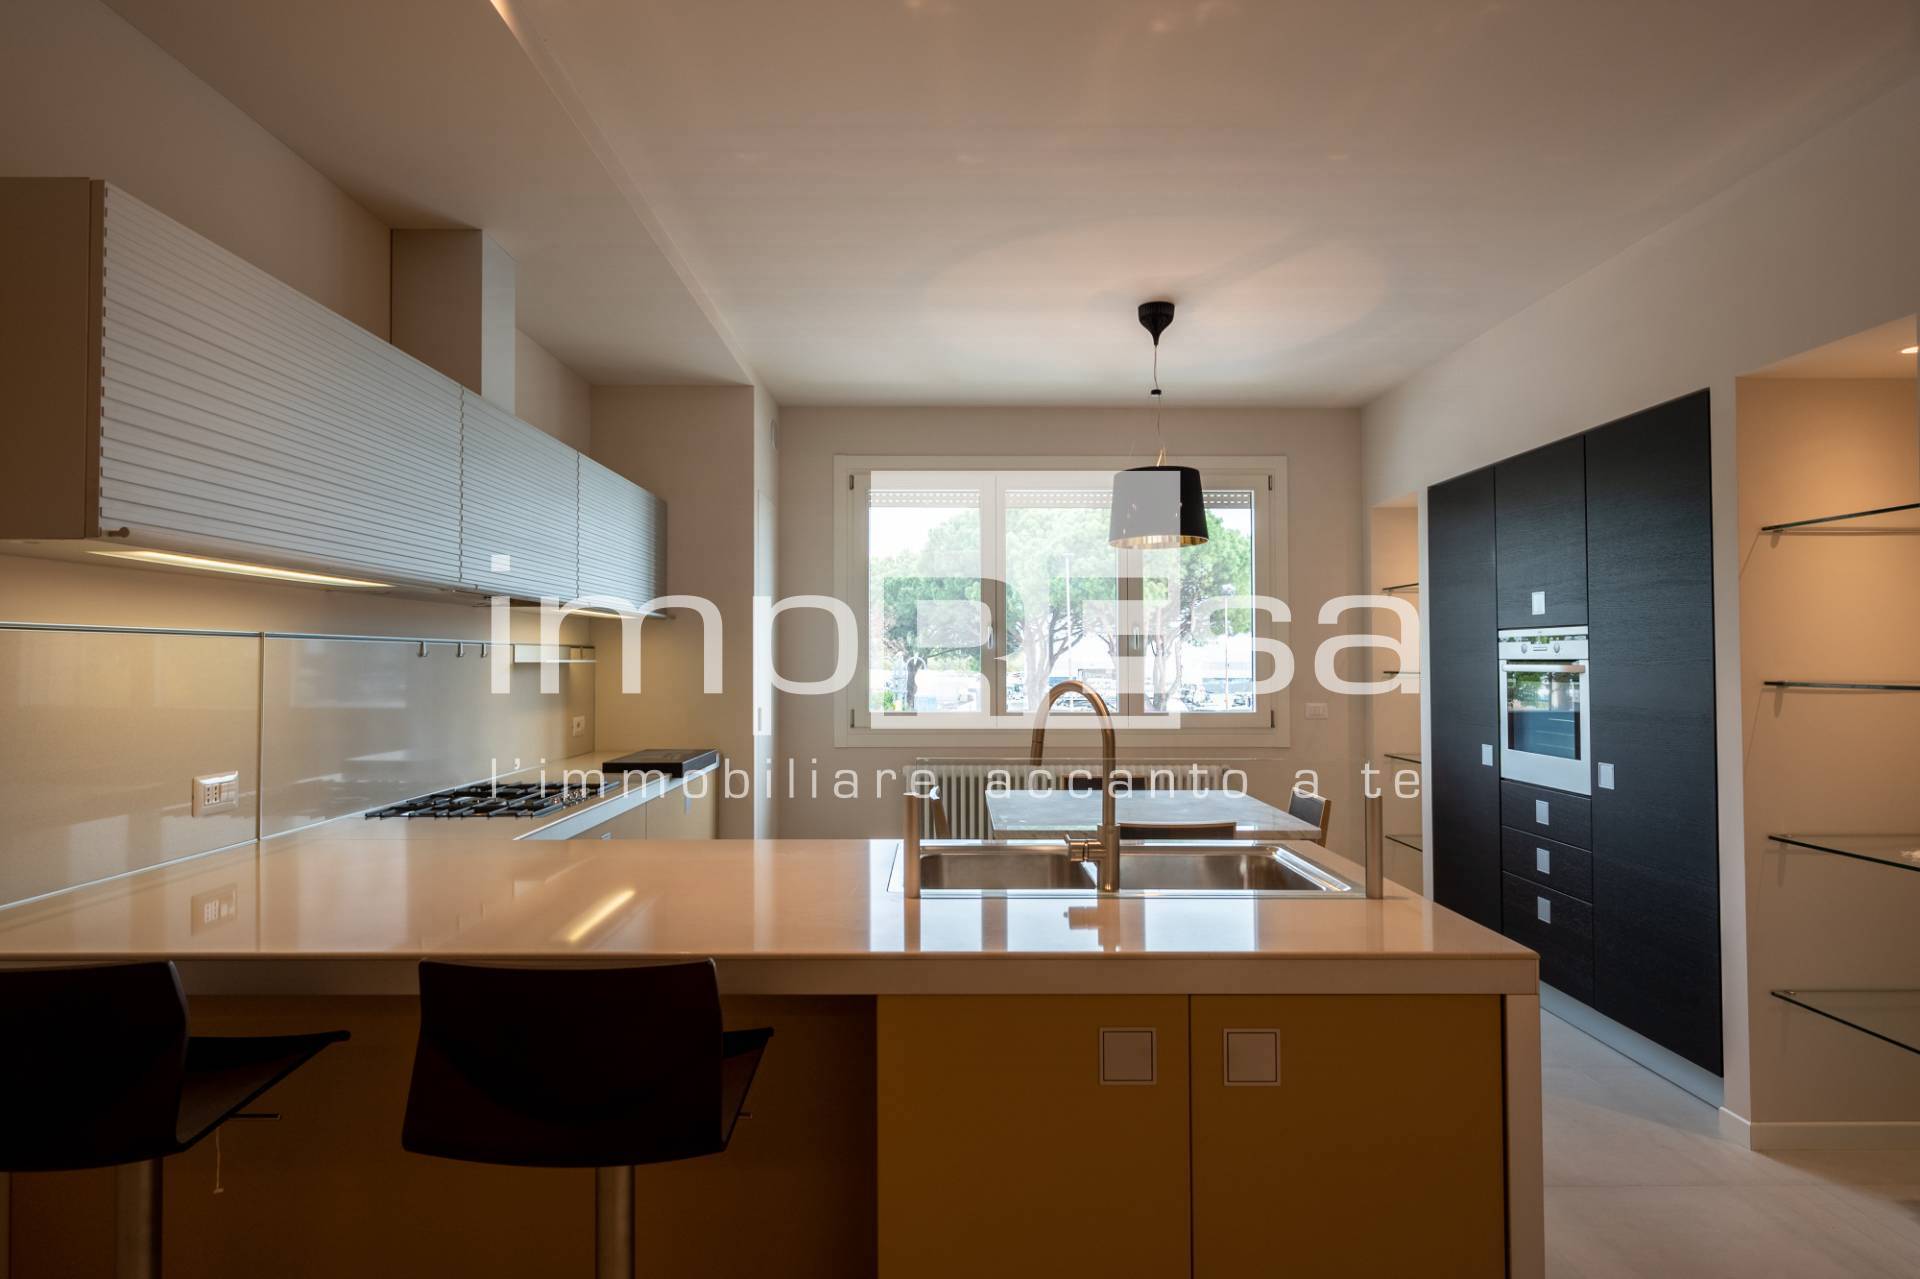 Appartamento in vendita a Gaiarine, 3 locali, prezzo € 185.000 | PortaleAgenzieImmobiliari.it